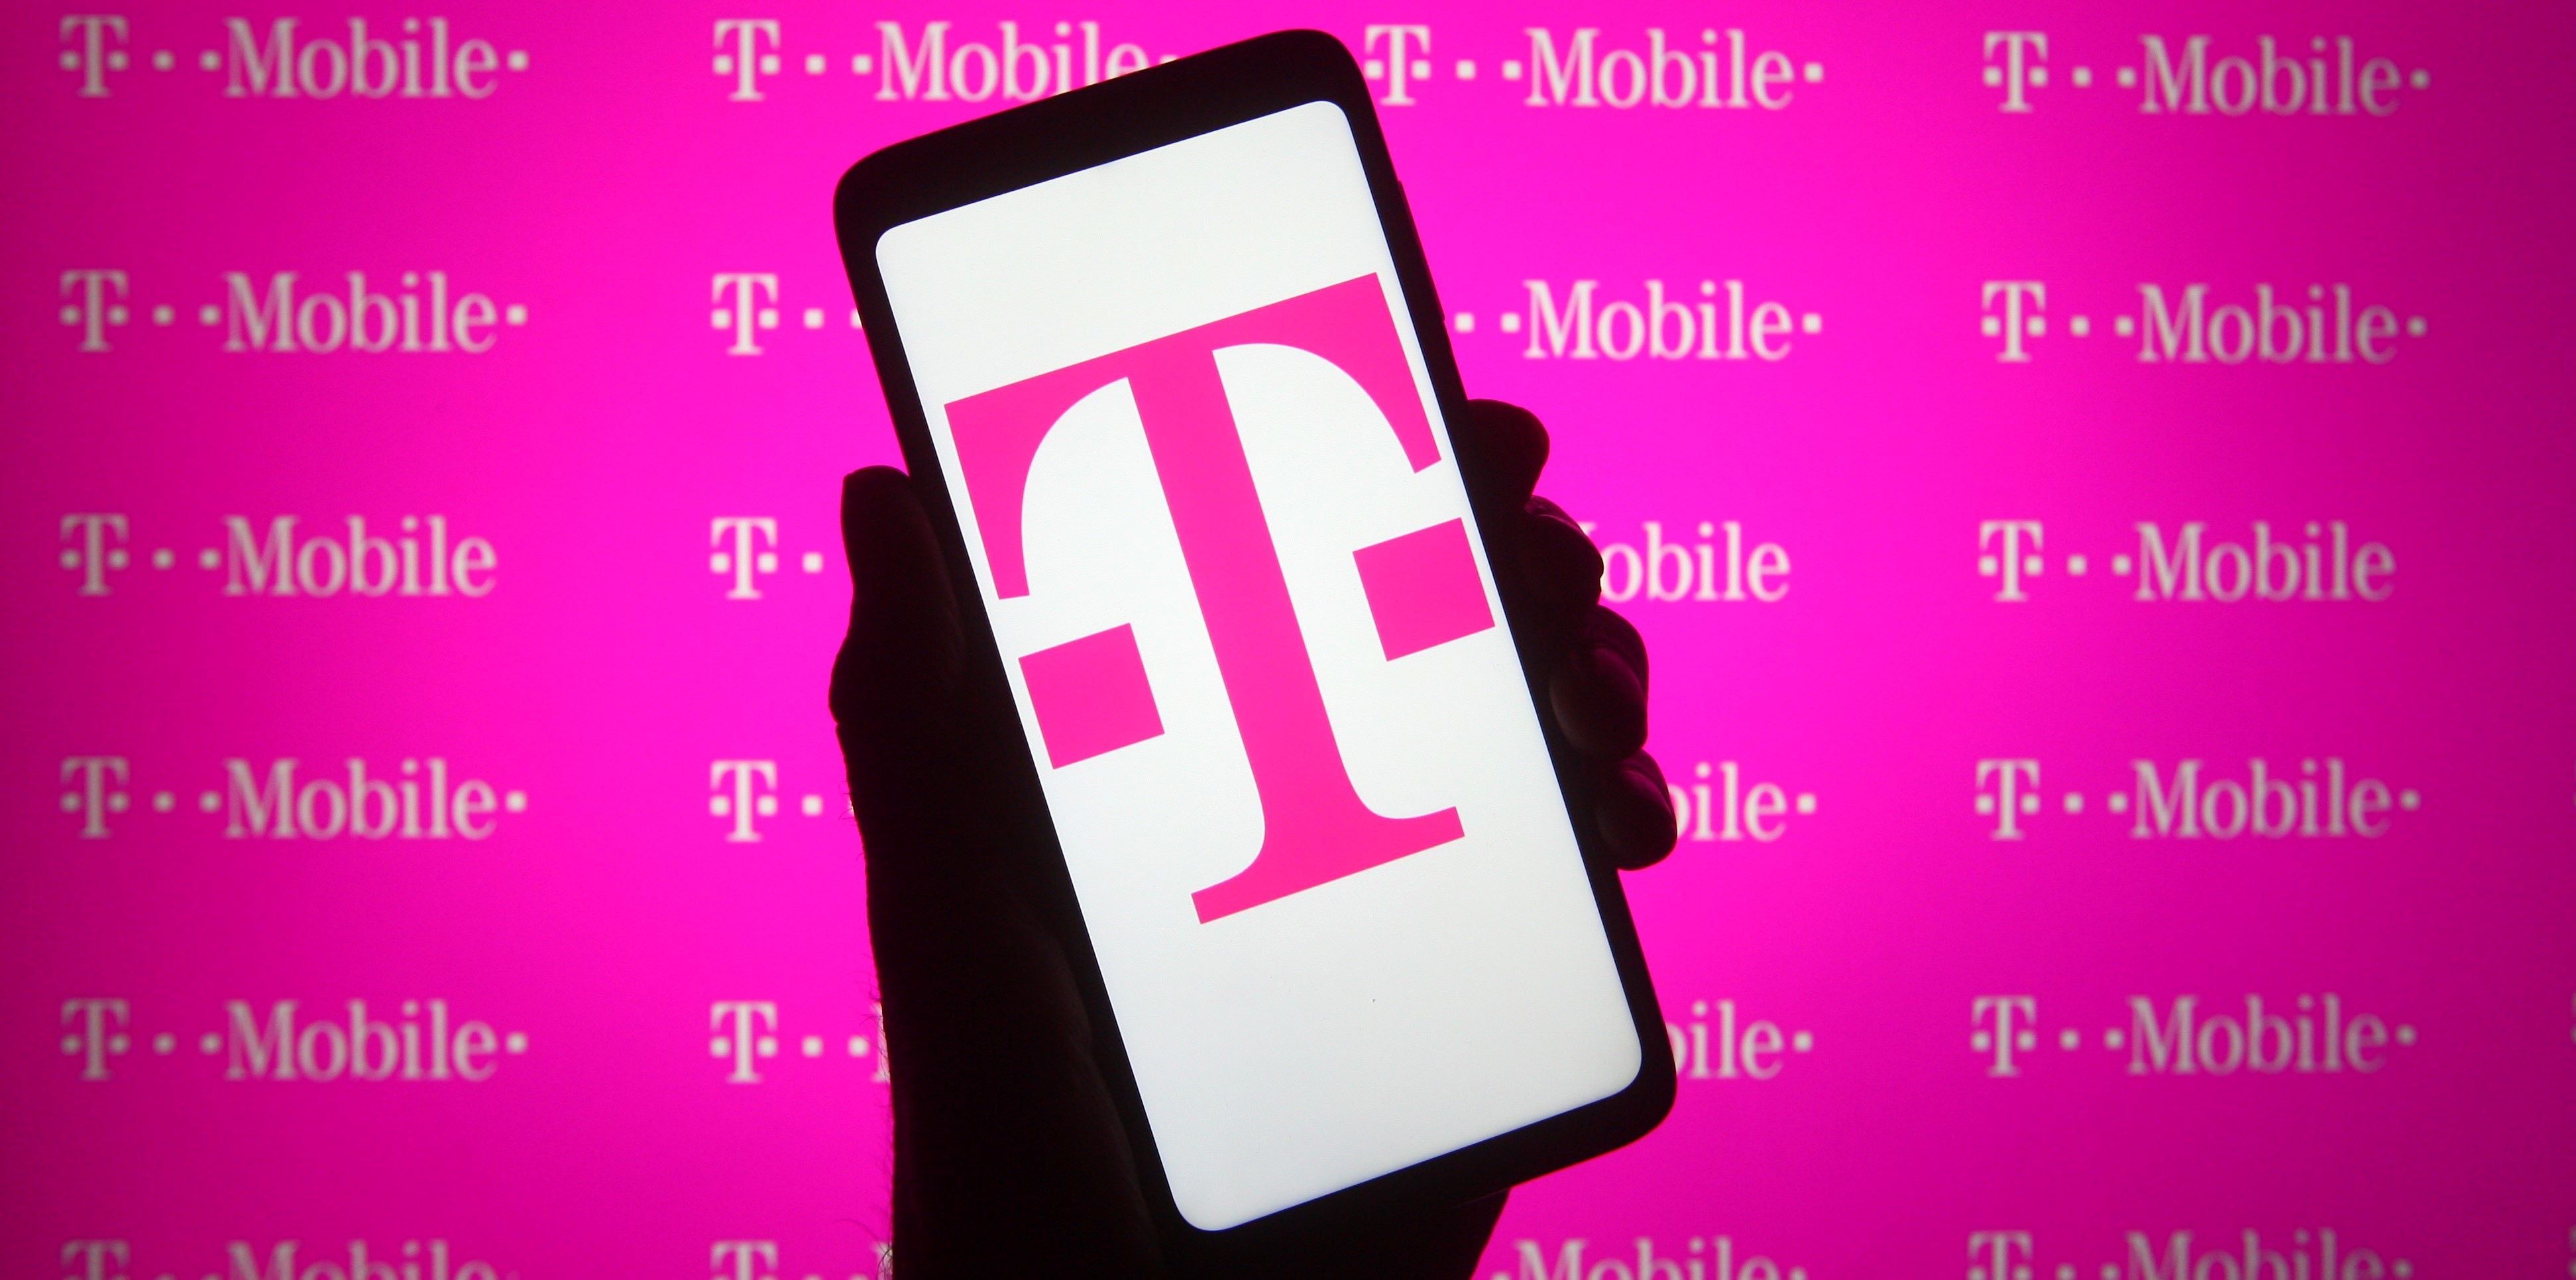 A tavalyi szériájánál kedvezőbb árú okostelefonokat dob piacra a Telekom